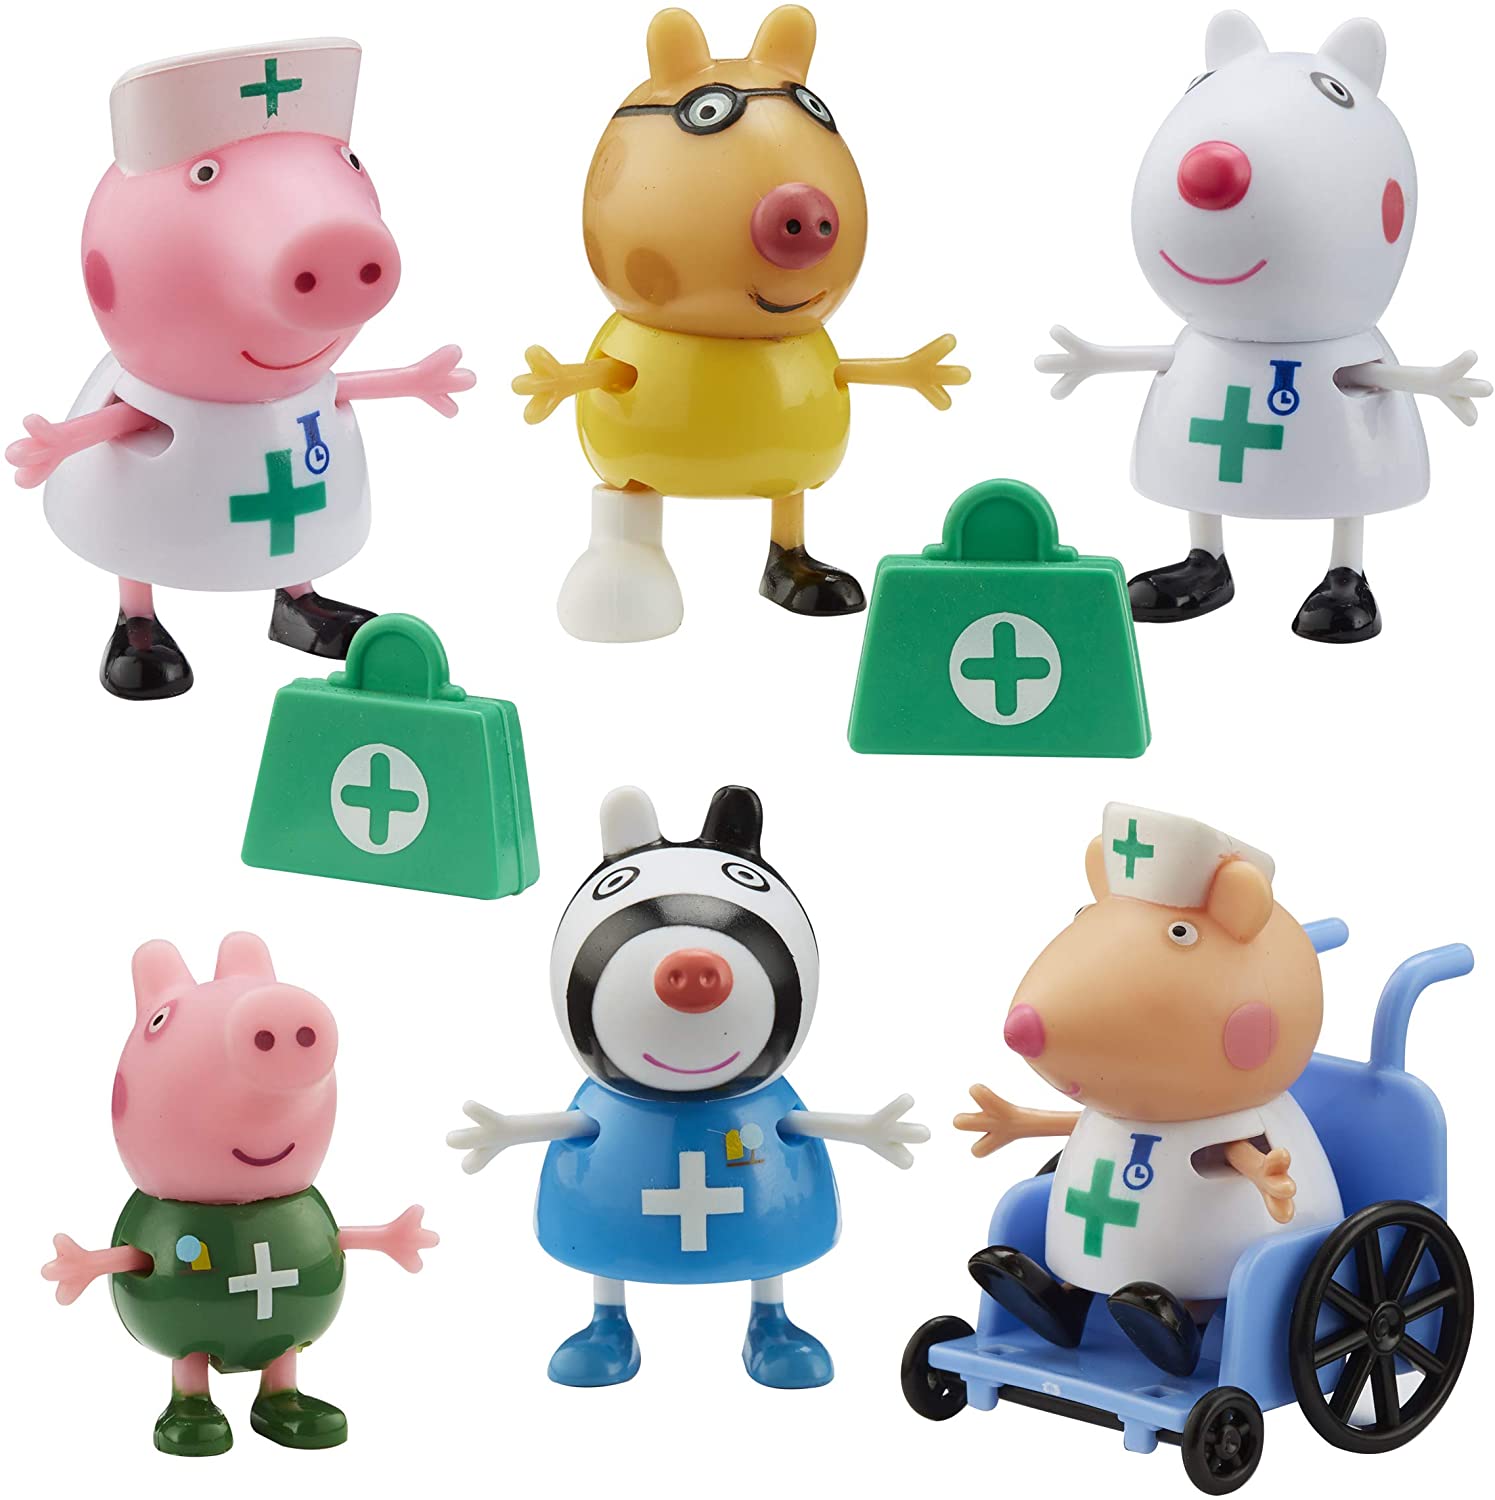 Peppa Pig - Doctors and Nurse Figure Pack